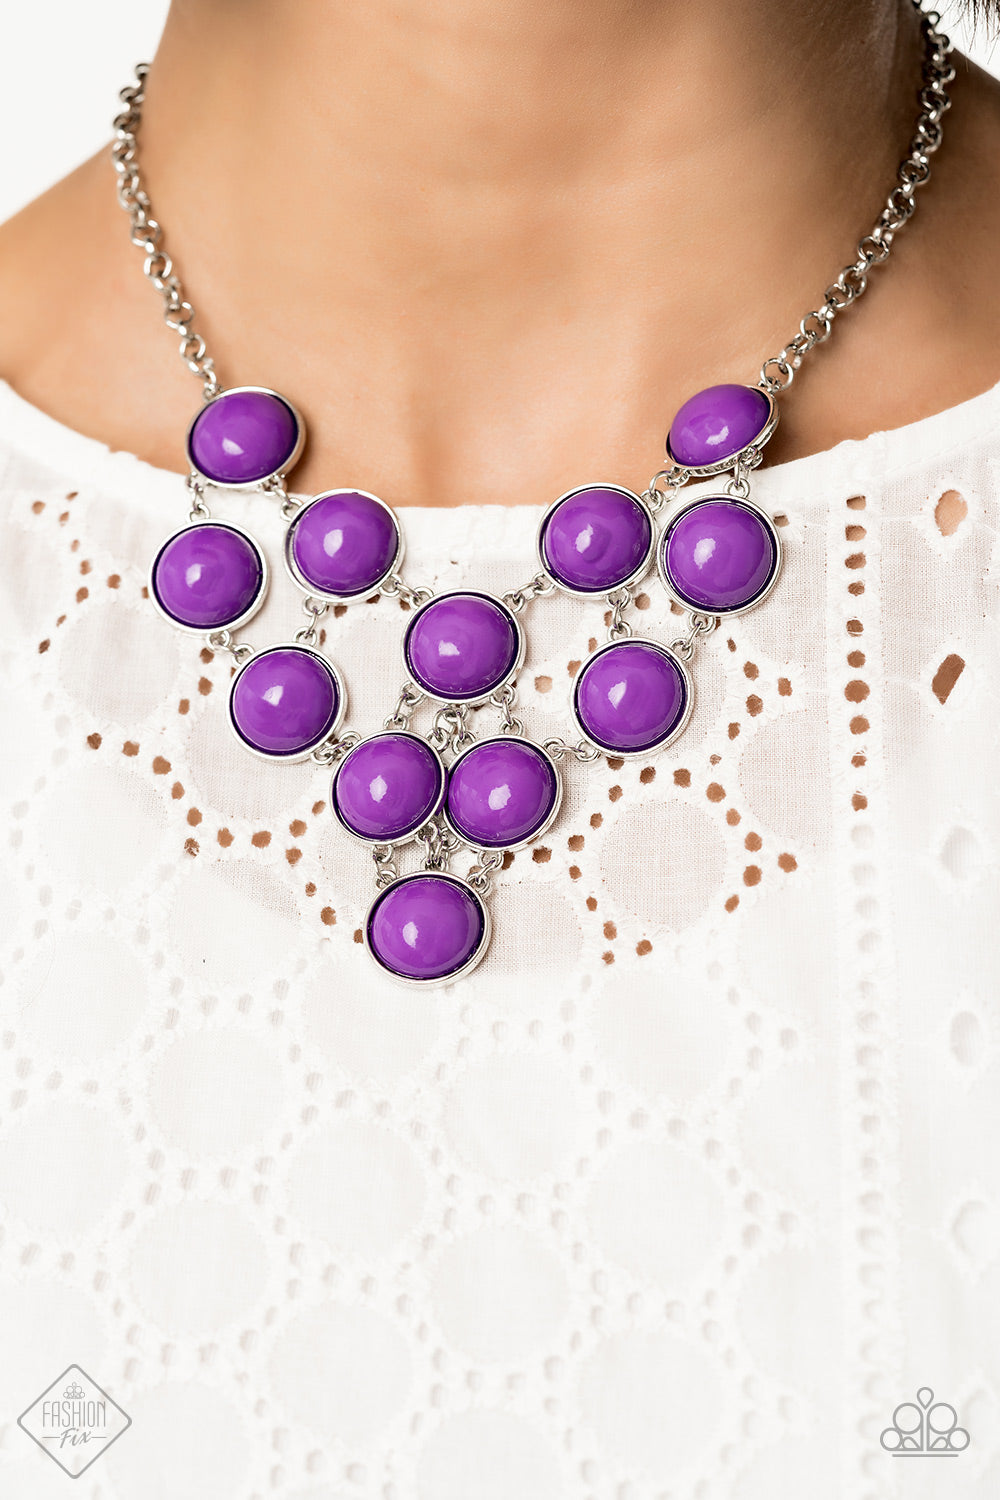 Pop-YOU-lar Demand - Purple necklace